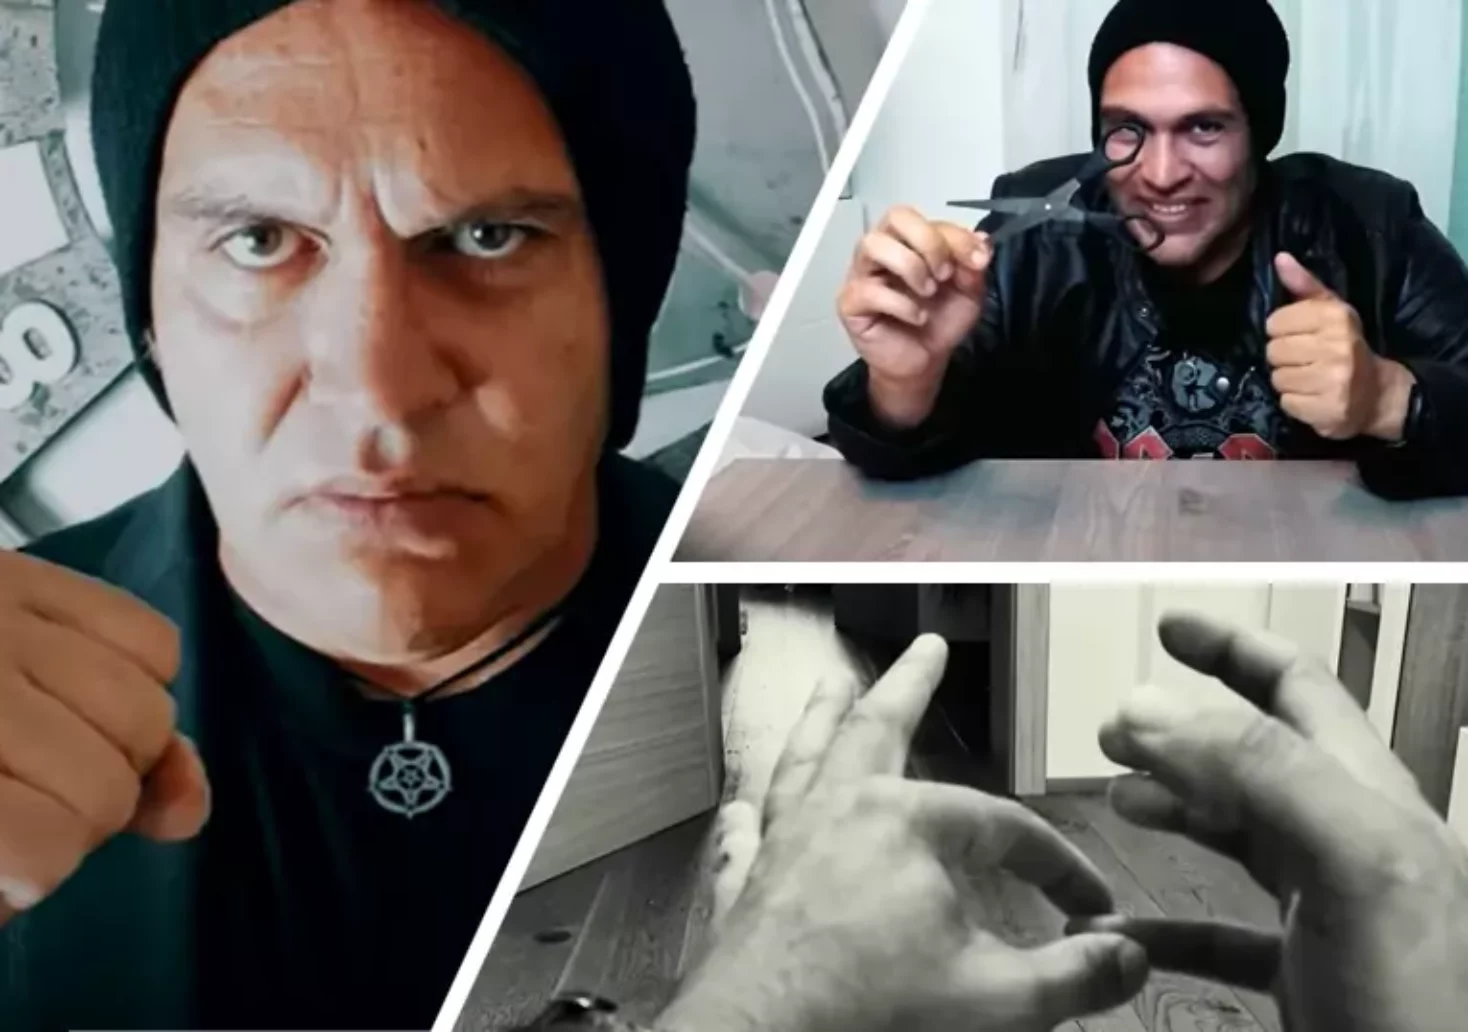 Cool: Klagenfurter überzeugt mit Illusion und Zauberrei auf YouTube